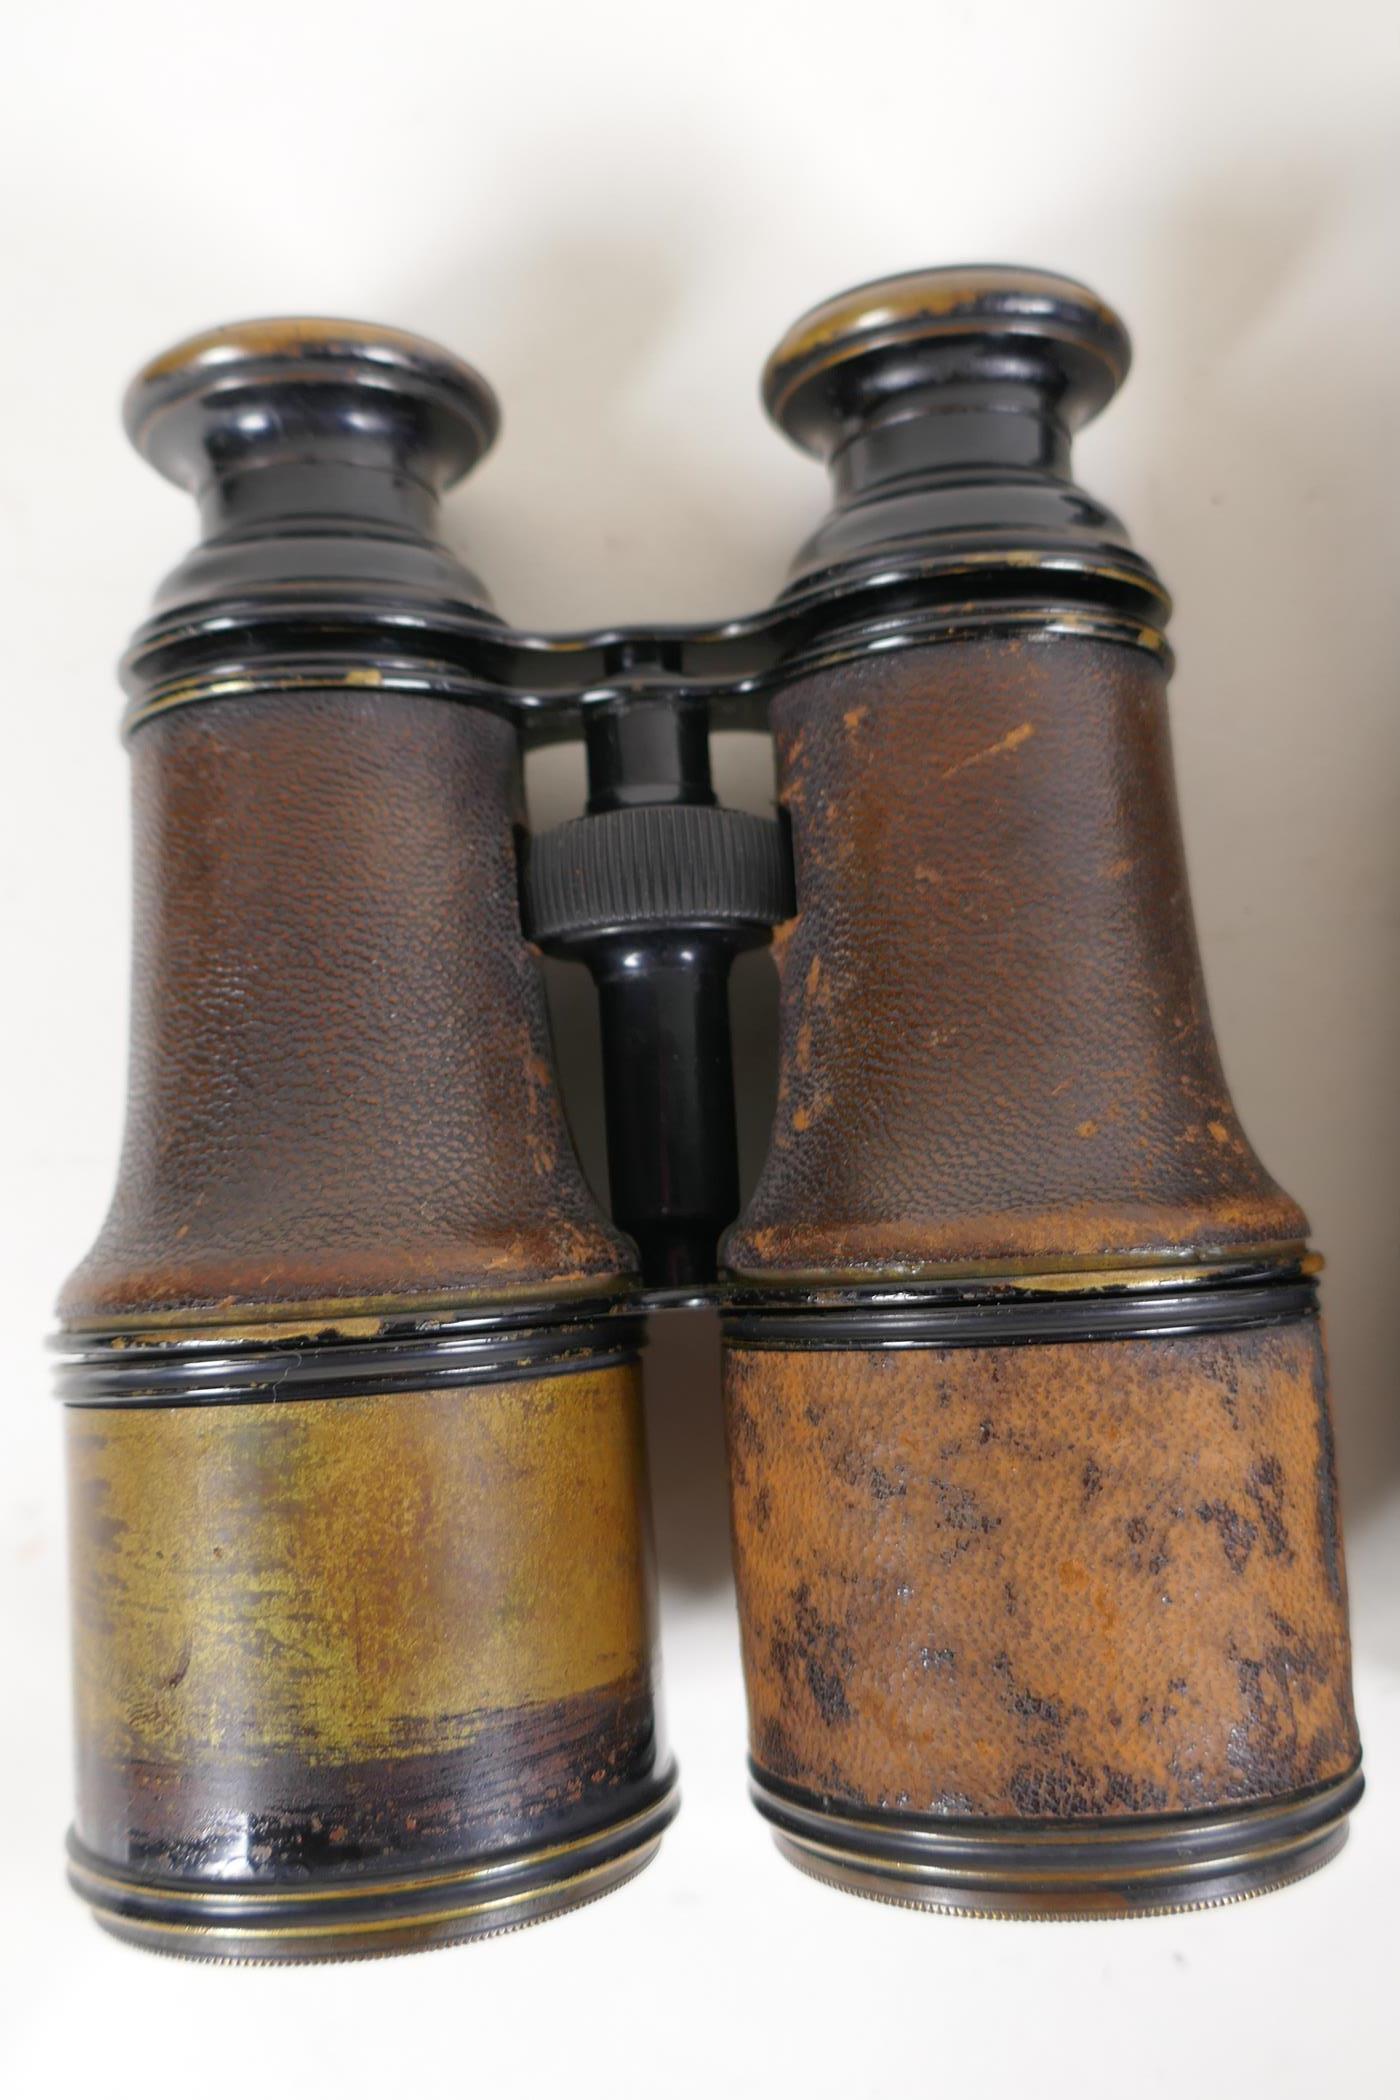 Three pairs of C19th binoculars - Image 4 of 4